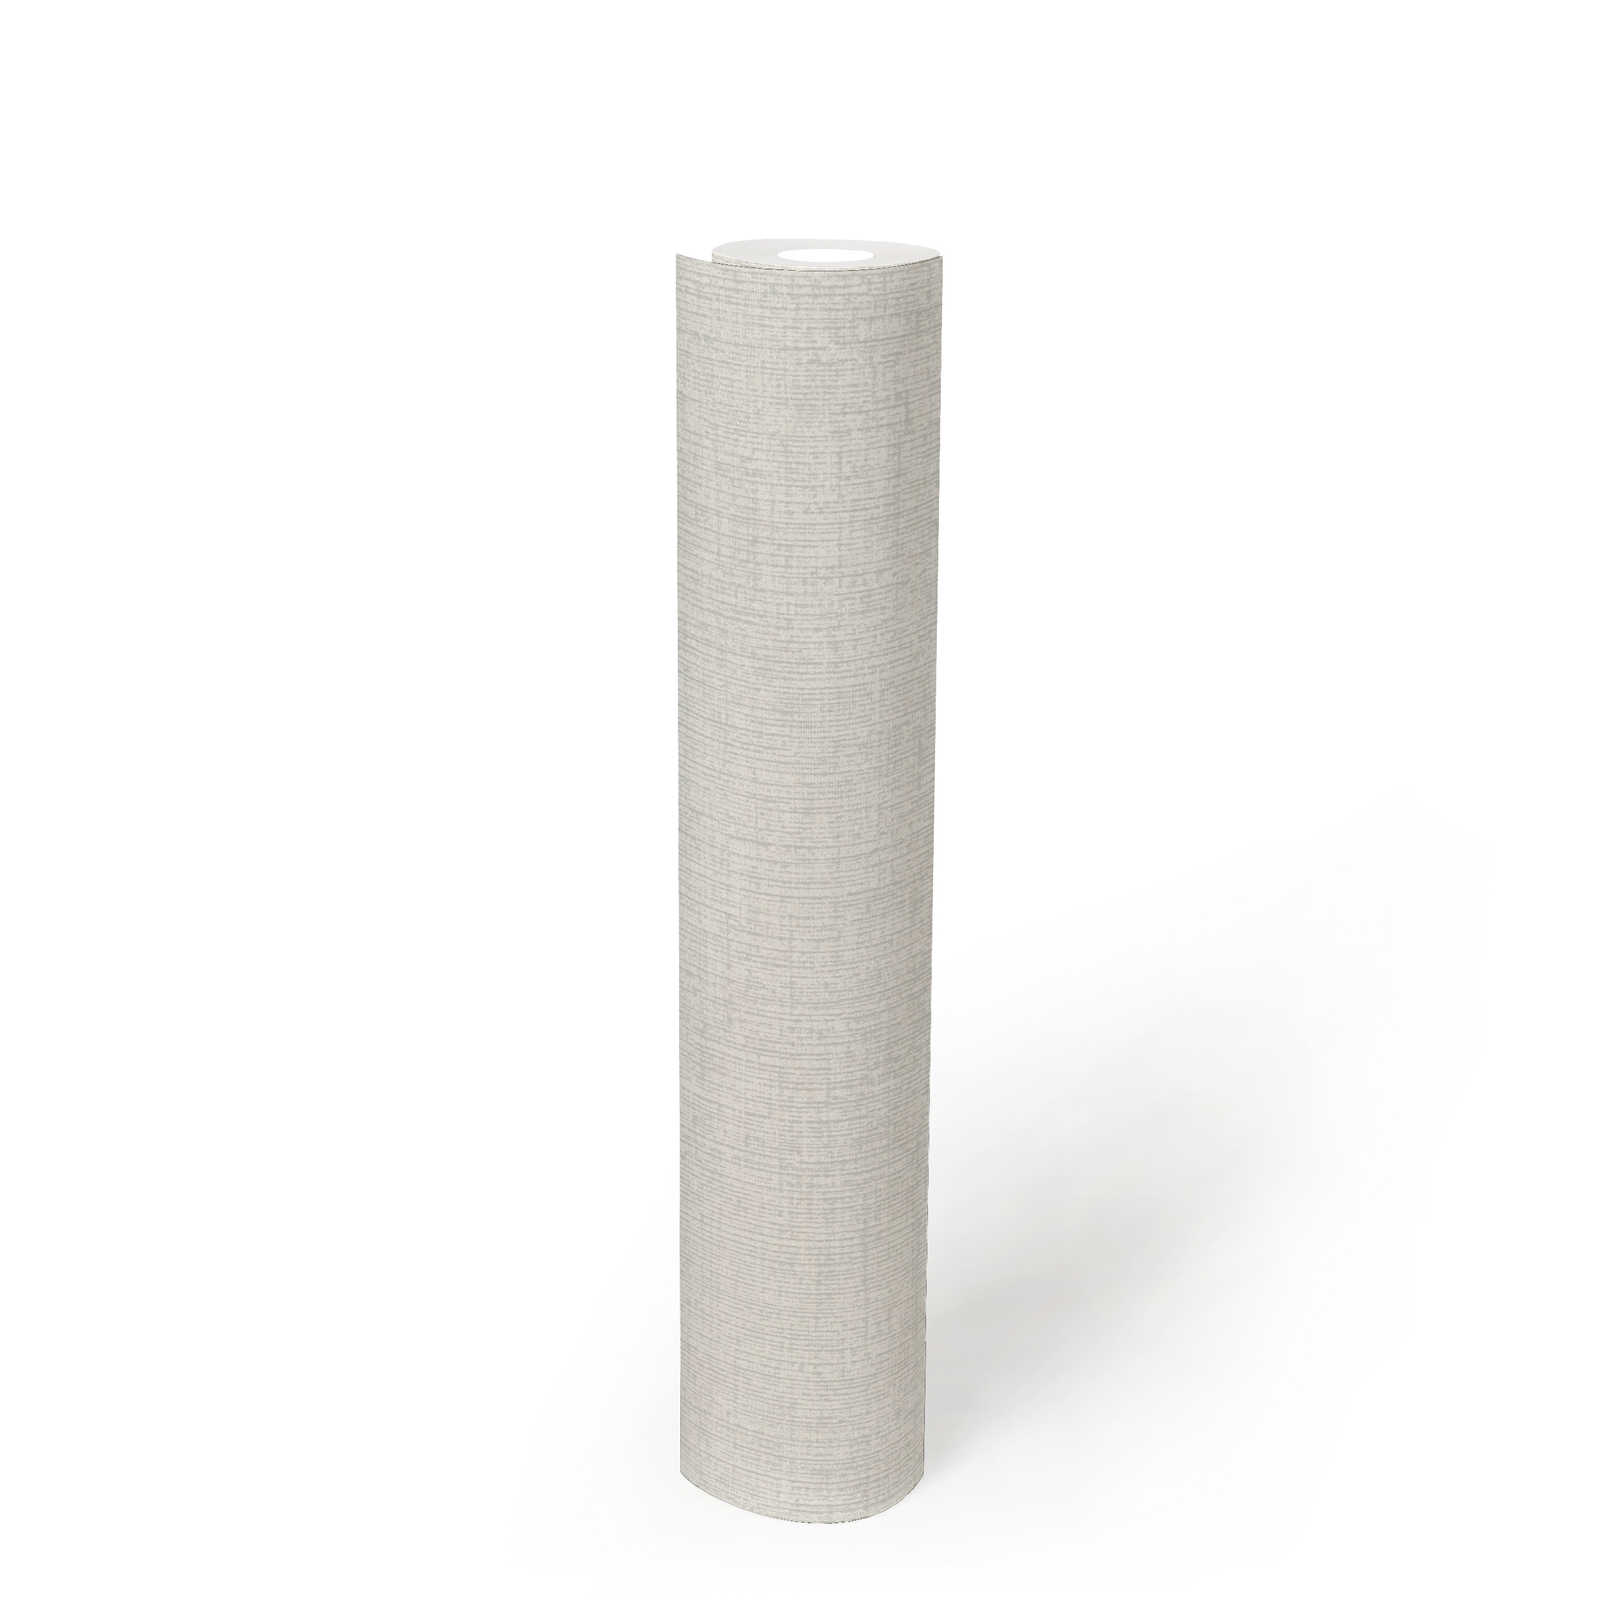             Carta da parati bianca in tessuto non tessuto con struttura a tela - bianca, metallizzata
        